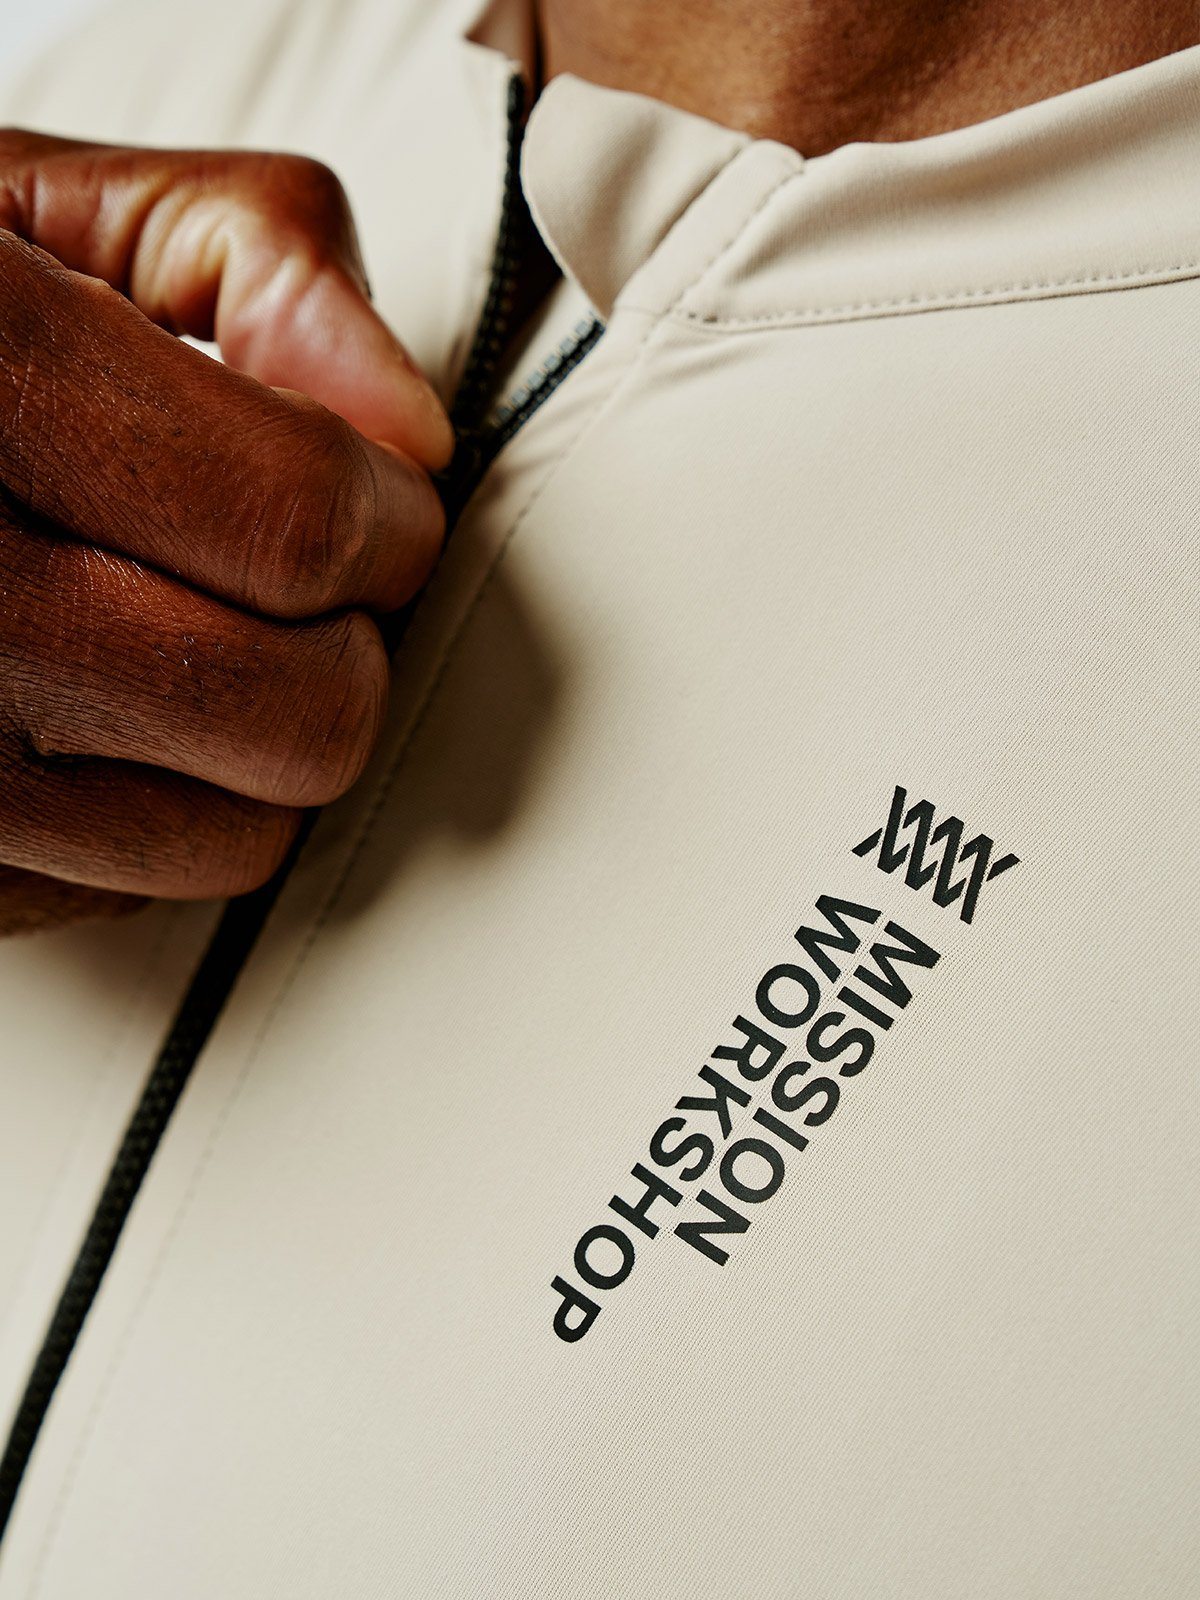 Mission Pro Jersey Men's by Mission Workshop - Säänkestävät laukut ja tekniset vaatteet - San Francisco & Los Angeles - Kestävä - ikuinen takuu